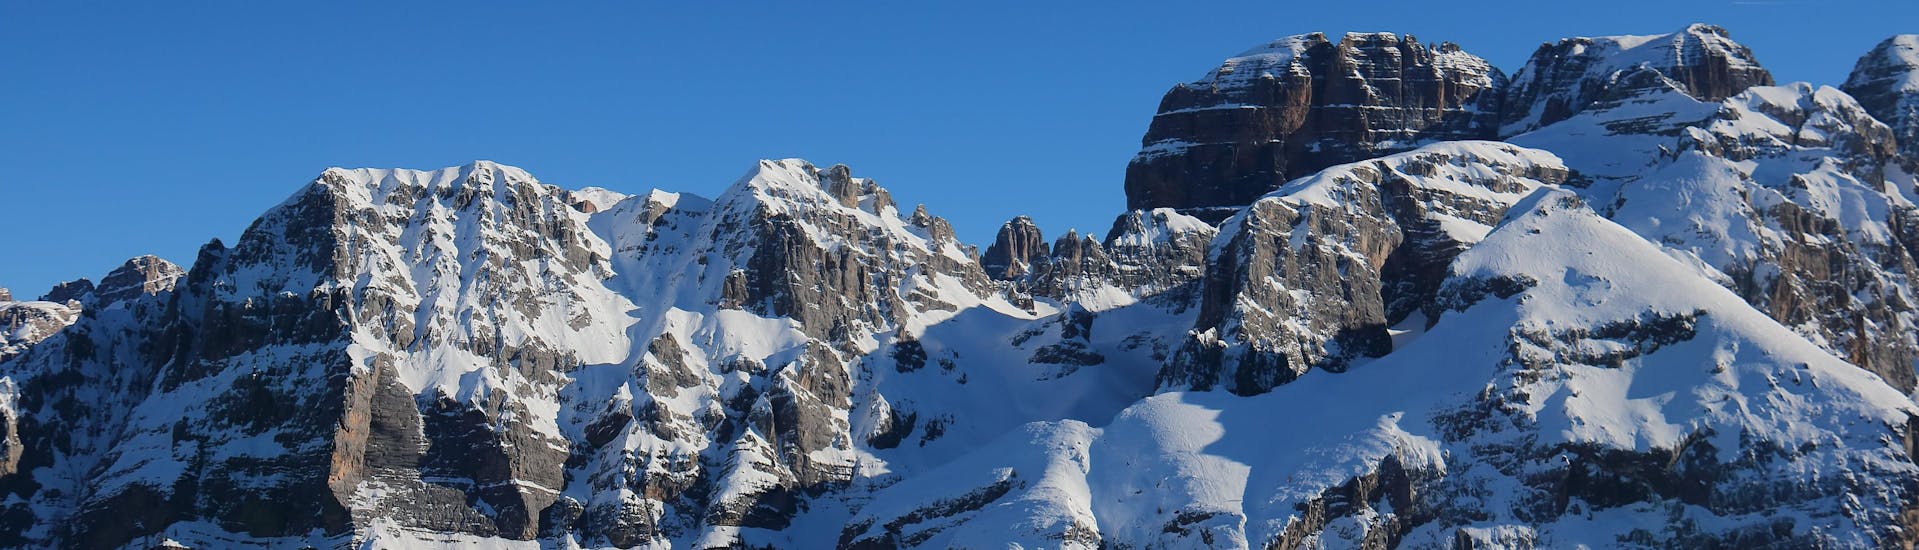 Blick auf die alpine Landschaft des Skigebiets Pinzolo, wo die örtlichen Skischulen ihre Skikurse anbieten.